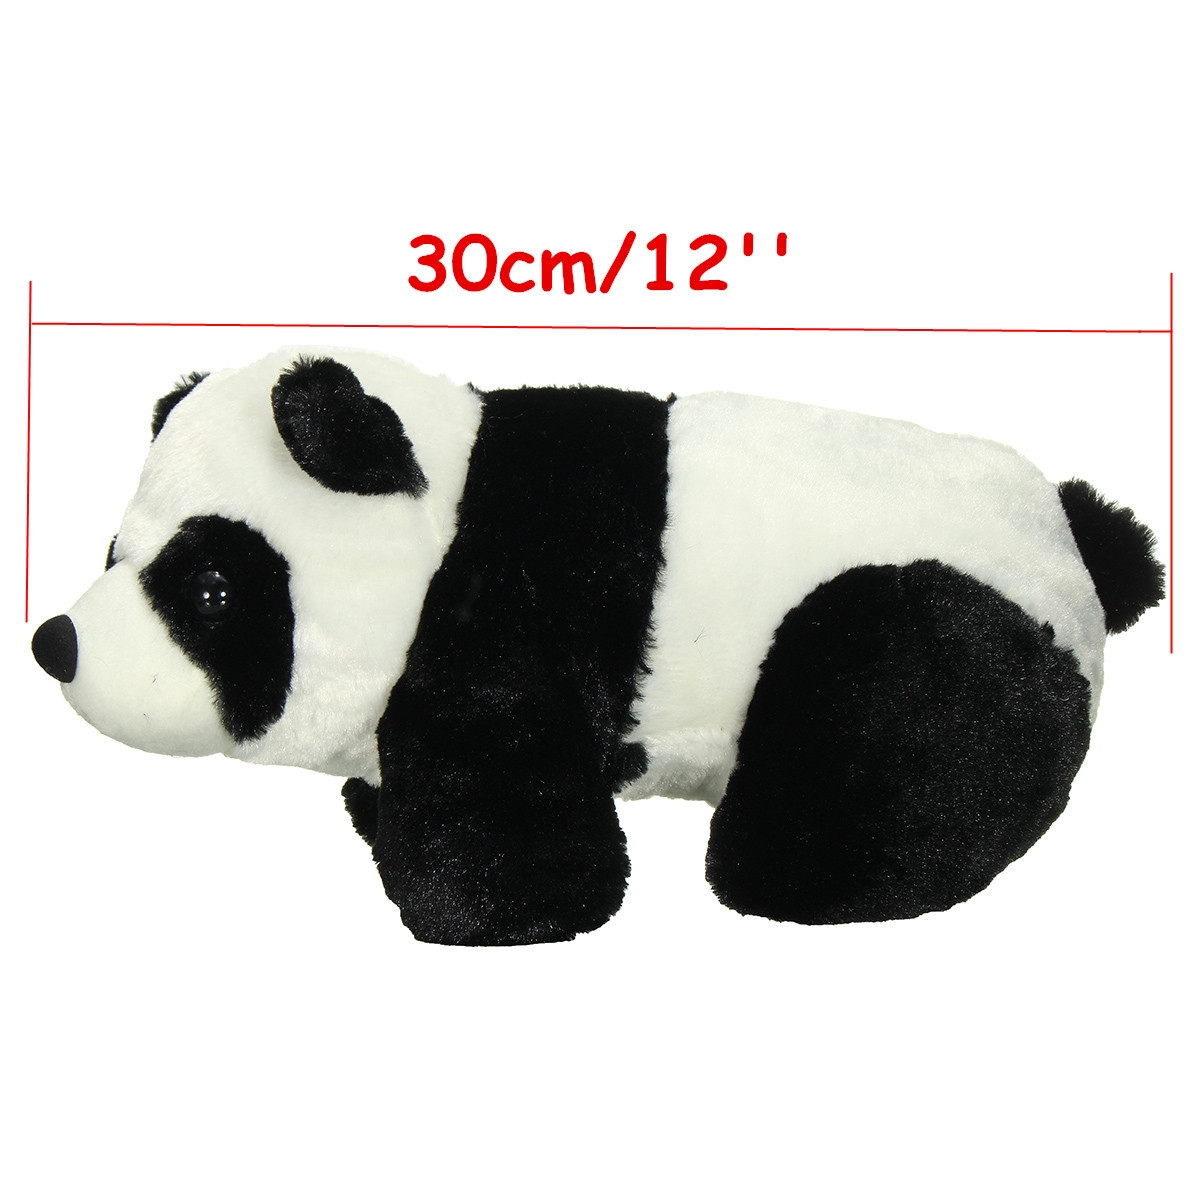 30cm 12'' Soft Plush Stuffed Panda PP Cotton Climbing Chinese Panda Doll Toy Gift